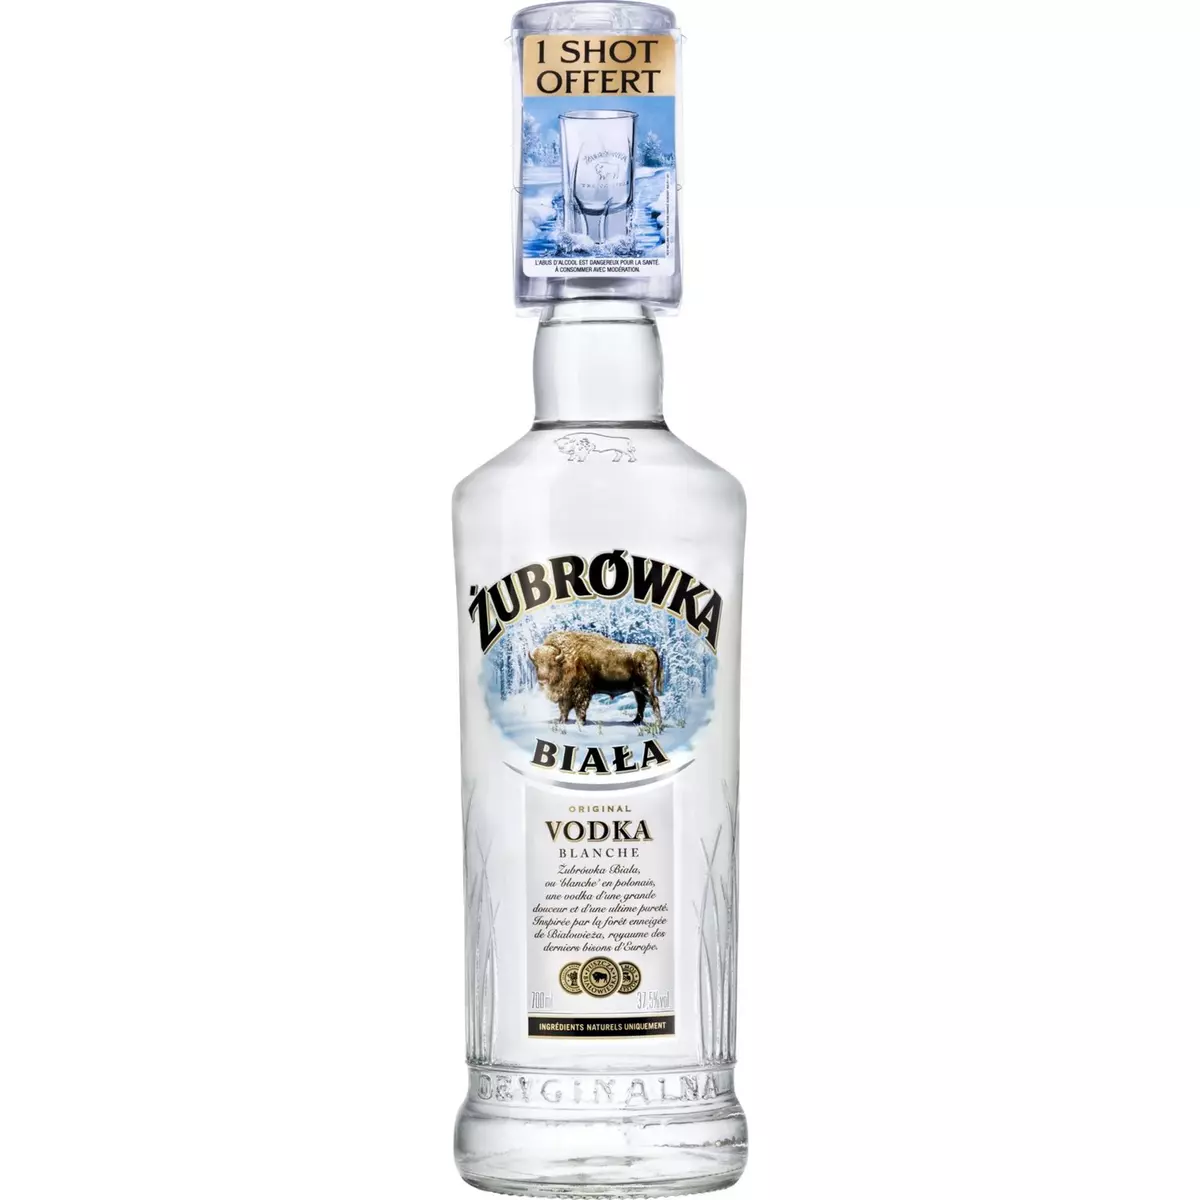 ZUBROWKA Vodka biala 37,5% + 1 verre shot offert 1 verre shot offert 70cl